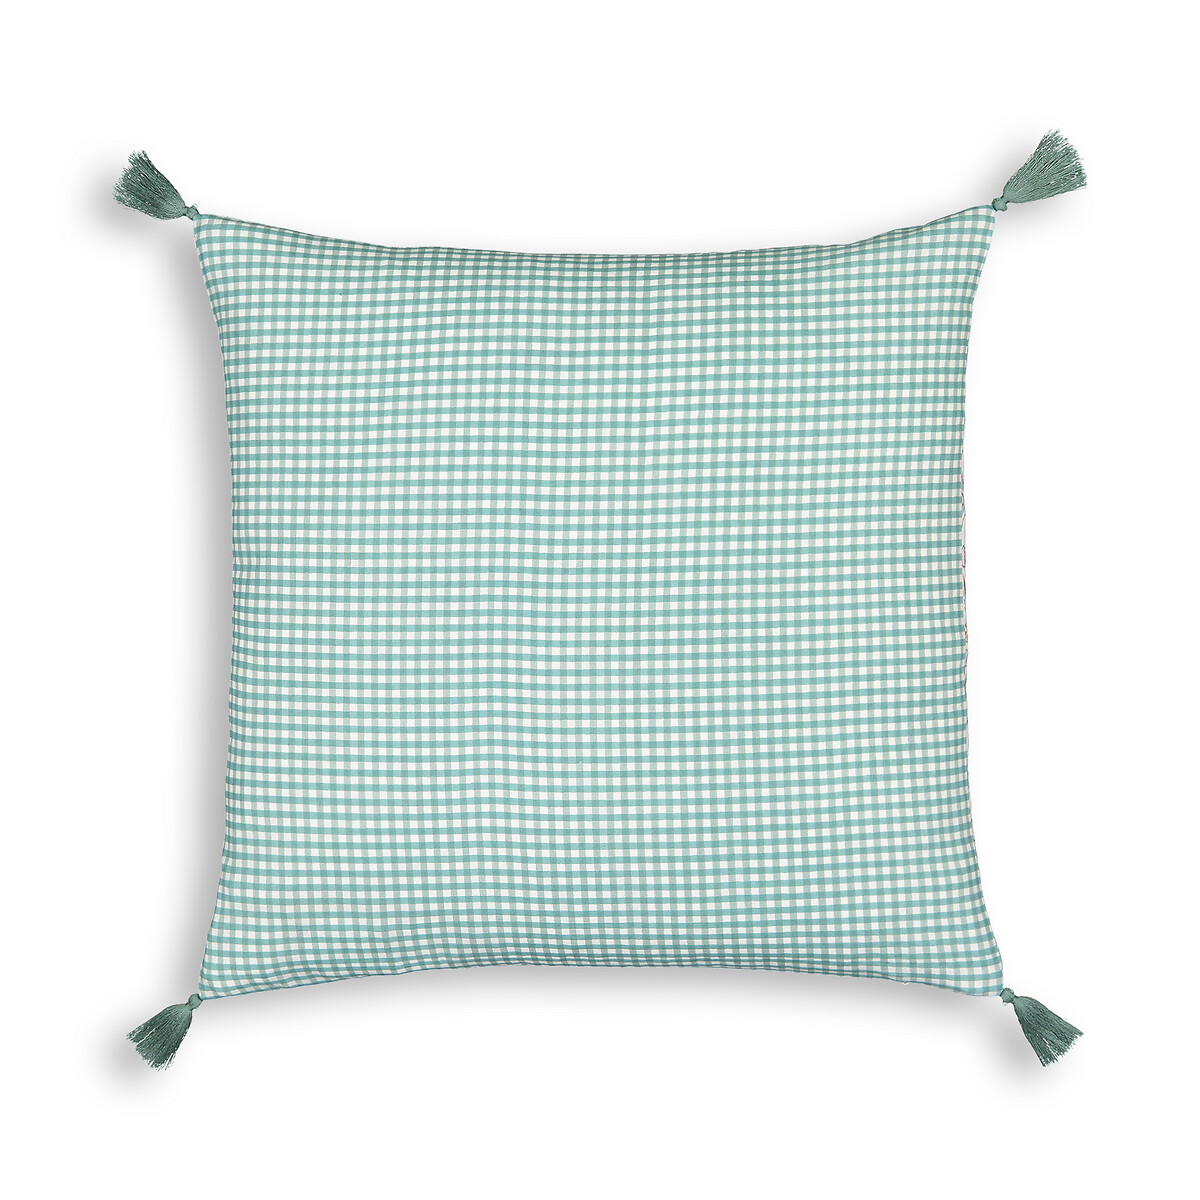 Чехол LaRedoute Для подушки из осветленного хлопка Grace 40 x 40 см зеленый, размер 40 x 40 см - фото 2